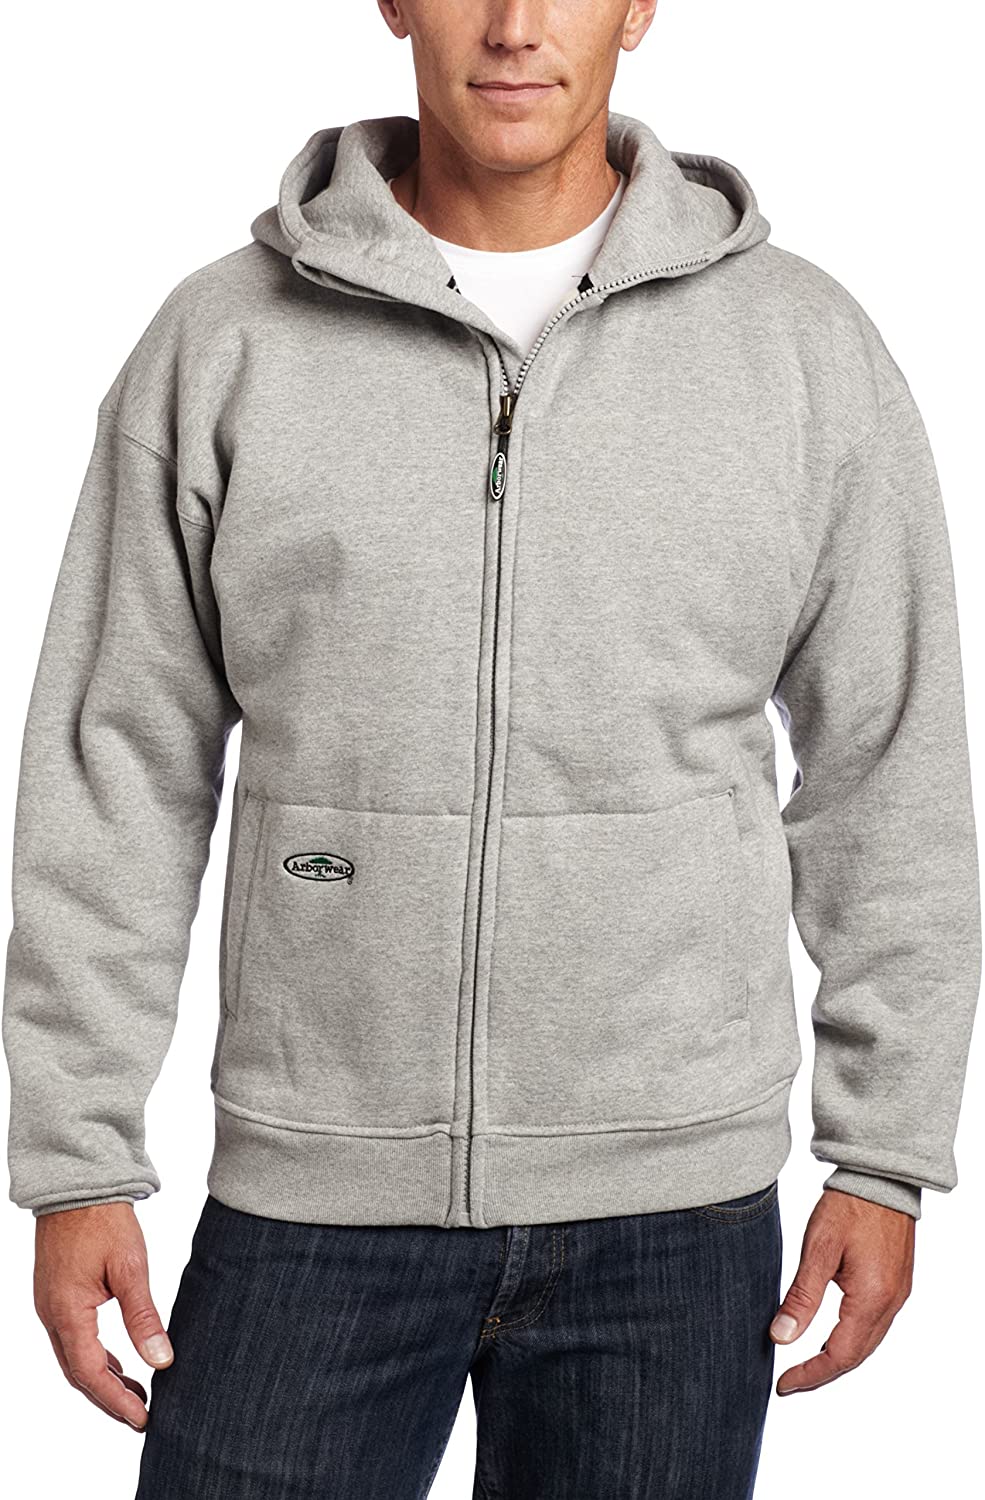 Men's Arborwear Double Thick Full Zip Sweatshirt in Athletic Grey